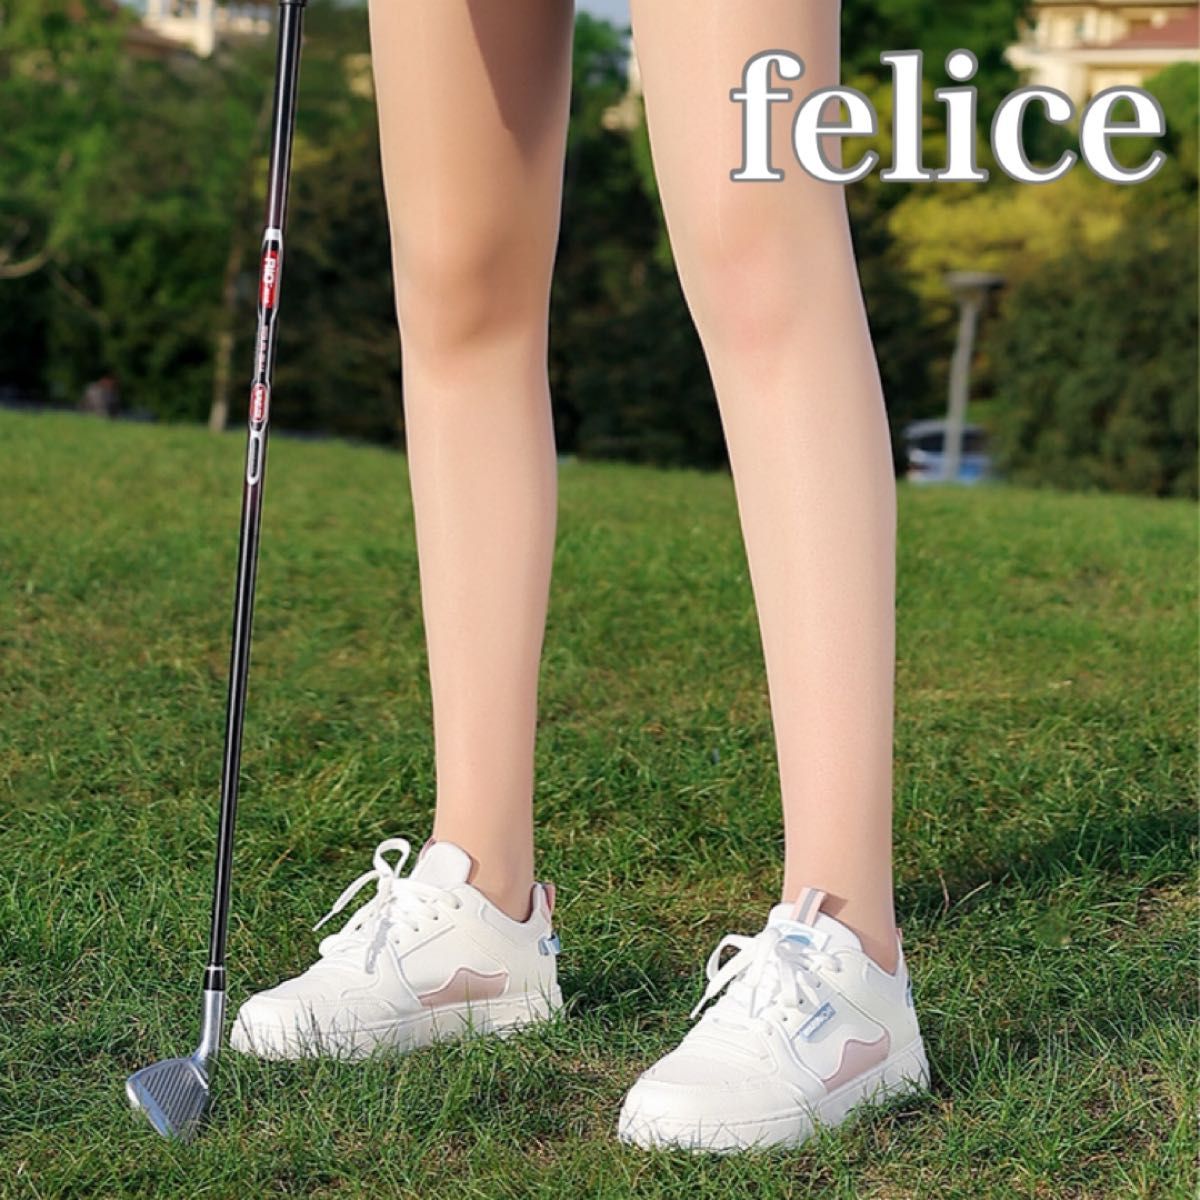 ゴルフ ストッキング スポーツ 韓国 大人気 肌色 UVカット ストッキング ゴルフ ウェア アームカバー